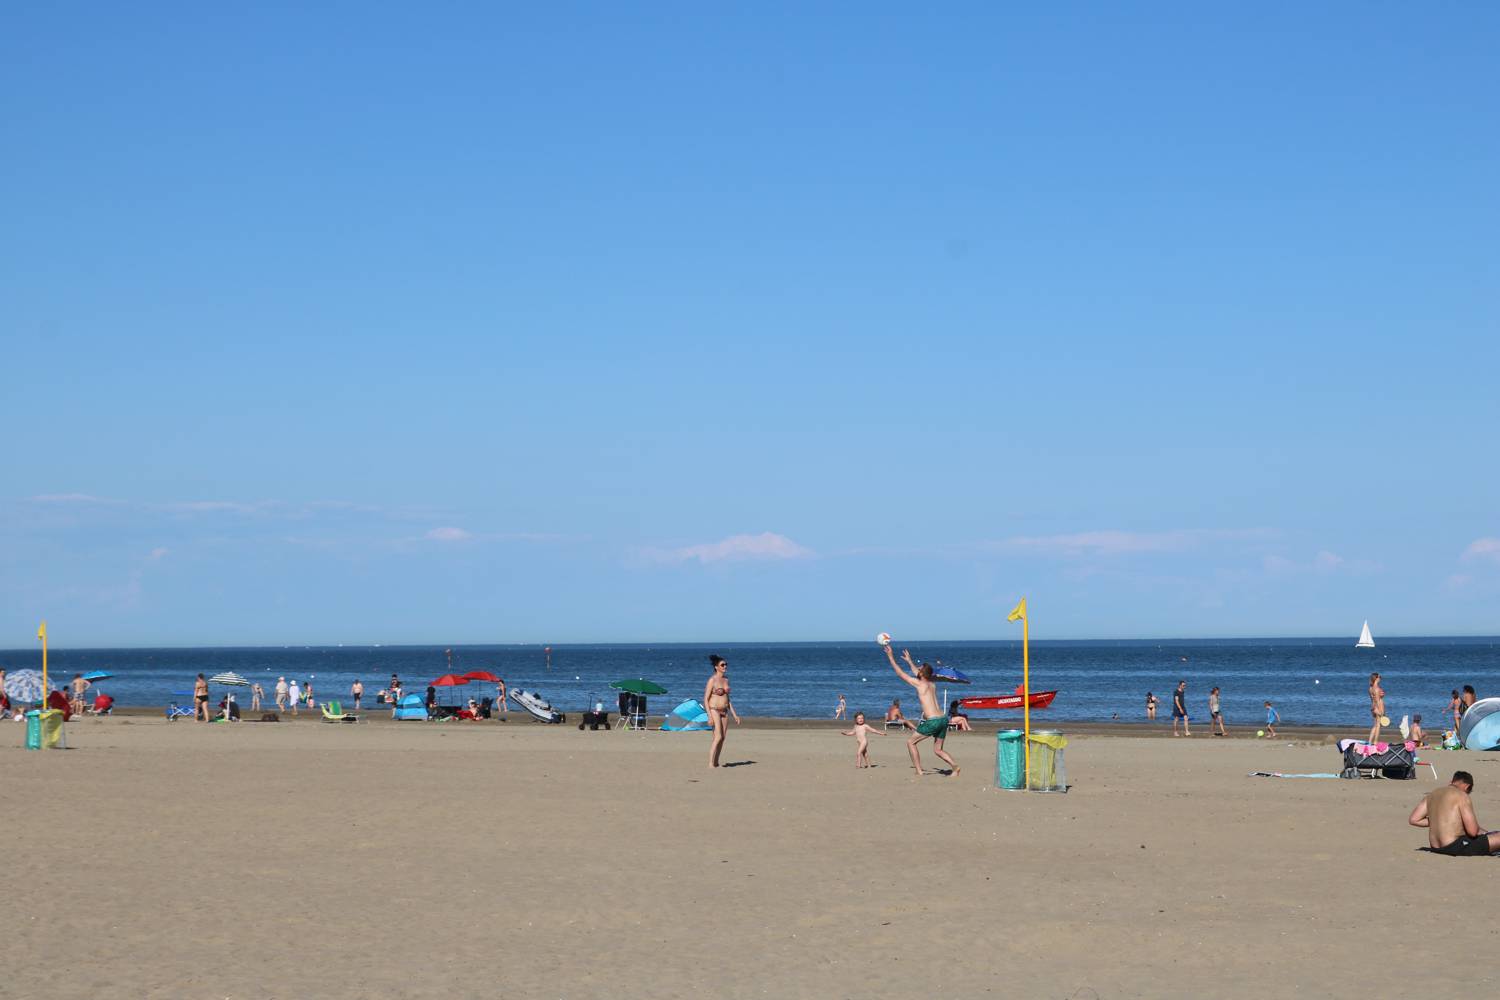 Sonnenbaden oder sportliche Aktivitäten am breiten Sandstrand von Marina di Venezia.